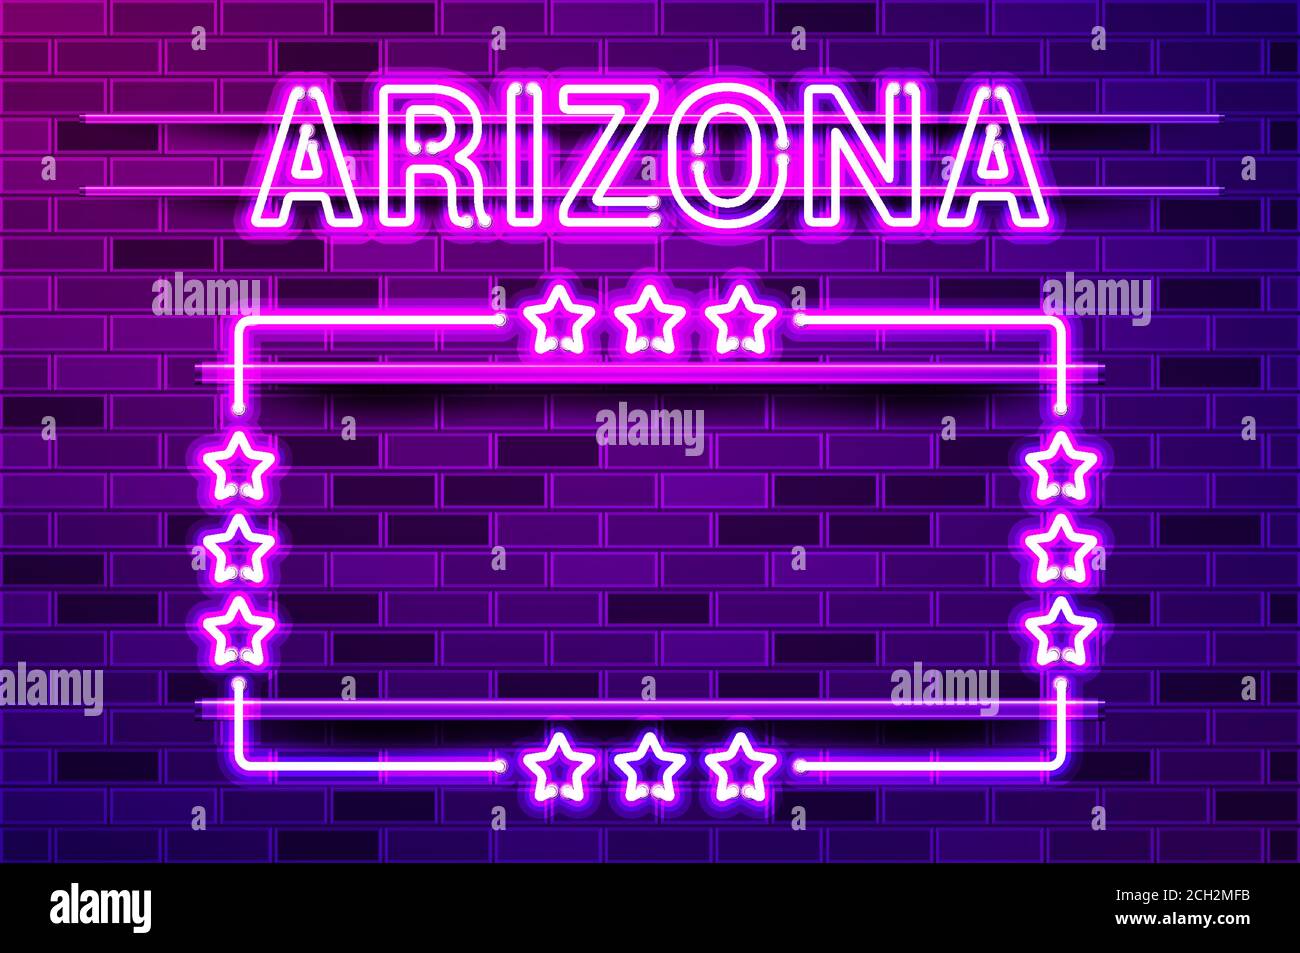 Arizona États-Unis lettres fluo violets et un cadre rectangulaire avec étoiles. Illustration vectorielle réaliste. Mur de briques violettes, lueur violette, META Illustration de Vecteur